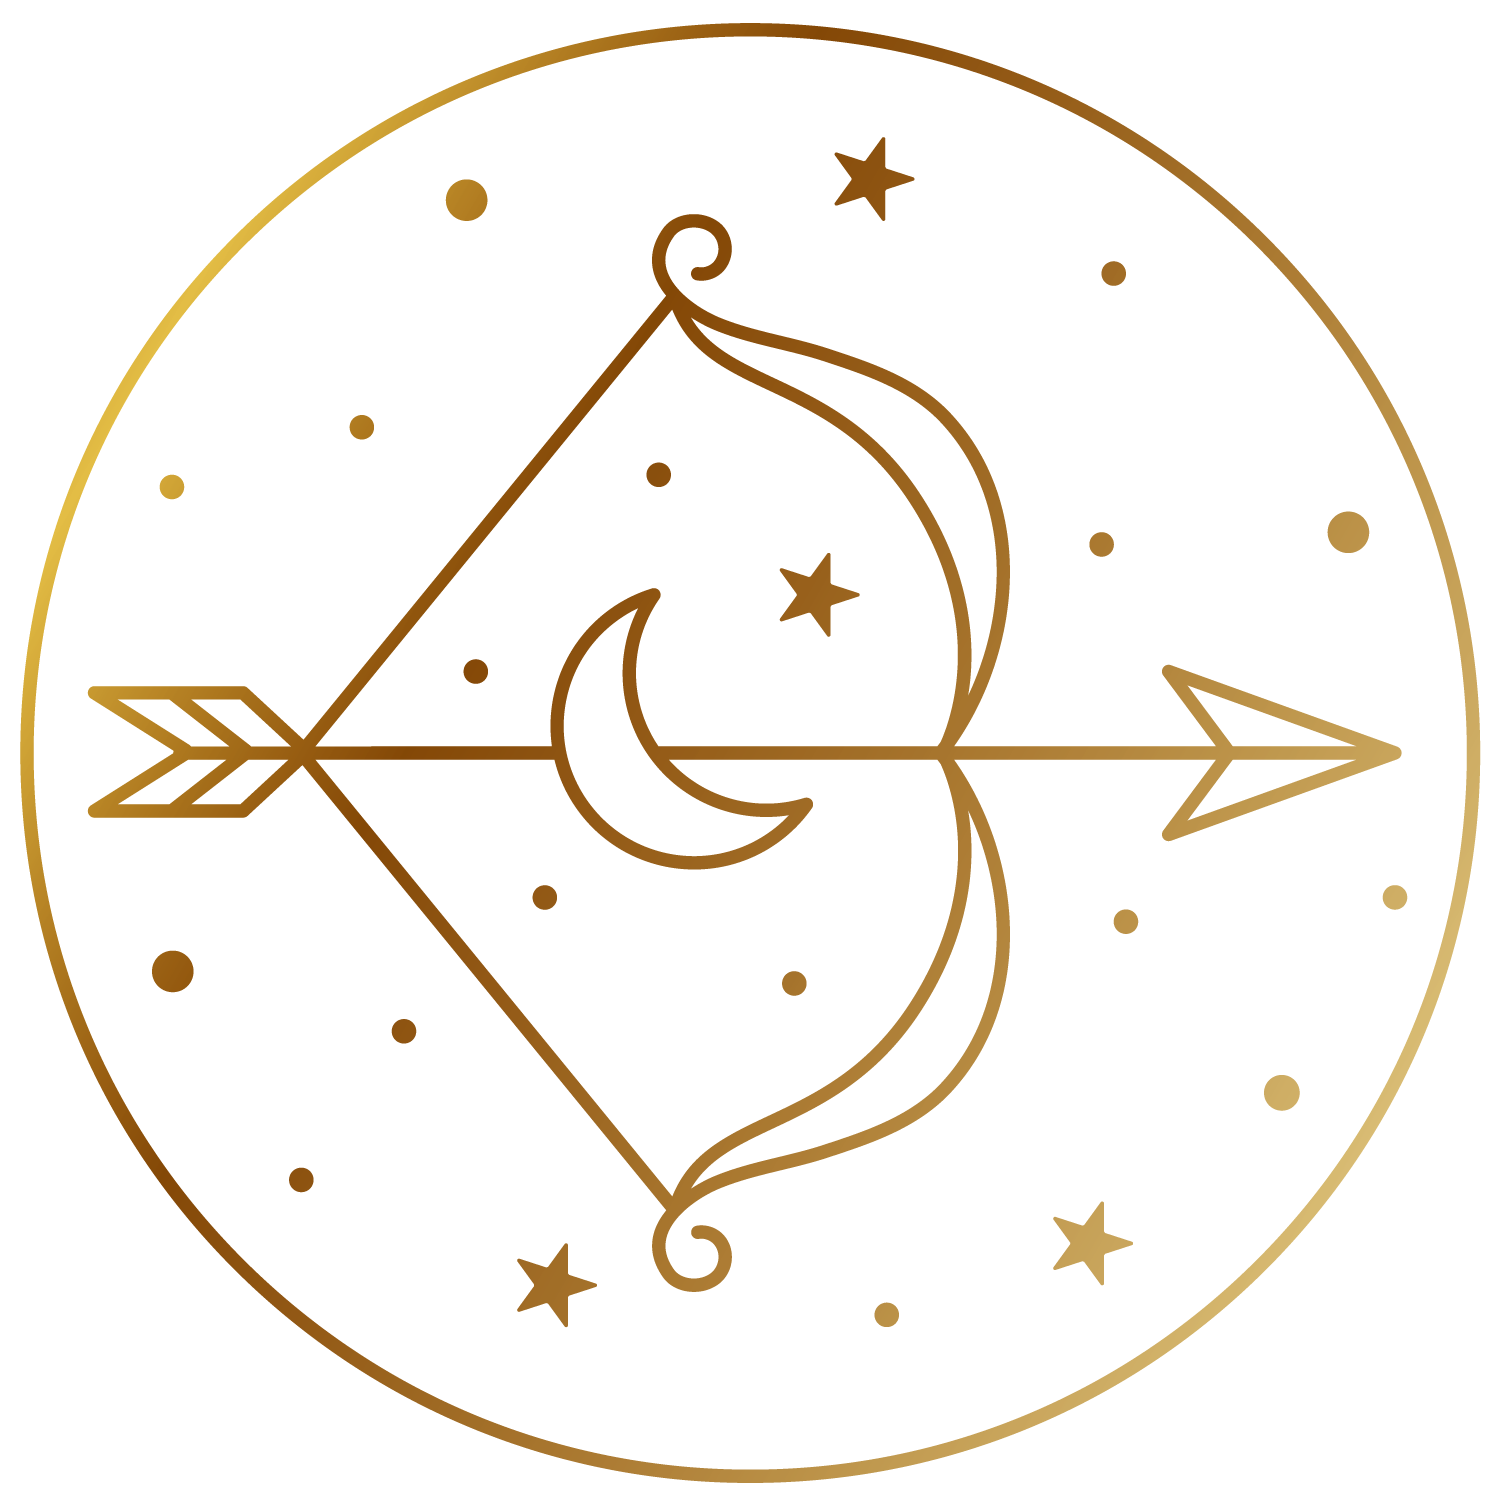 Zodiac Signs_Sagittarius_Gold_Pixejoo